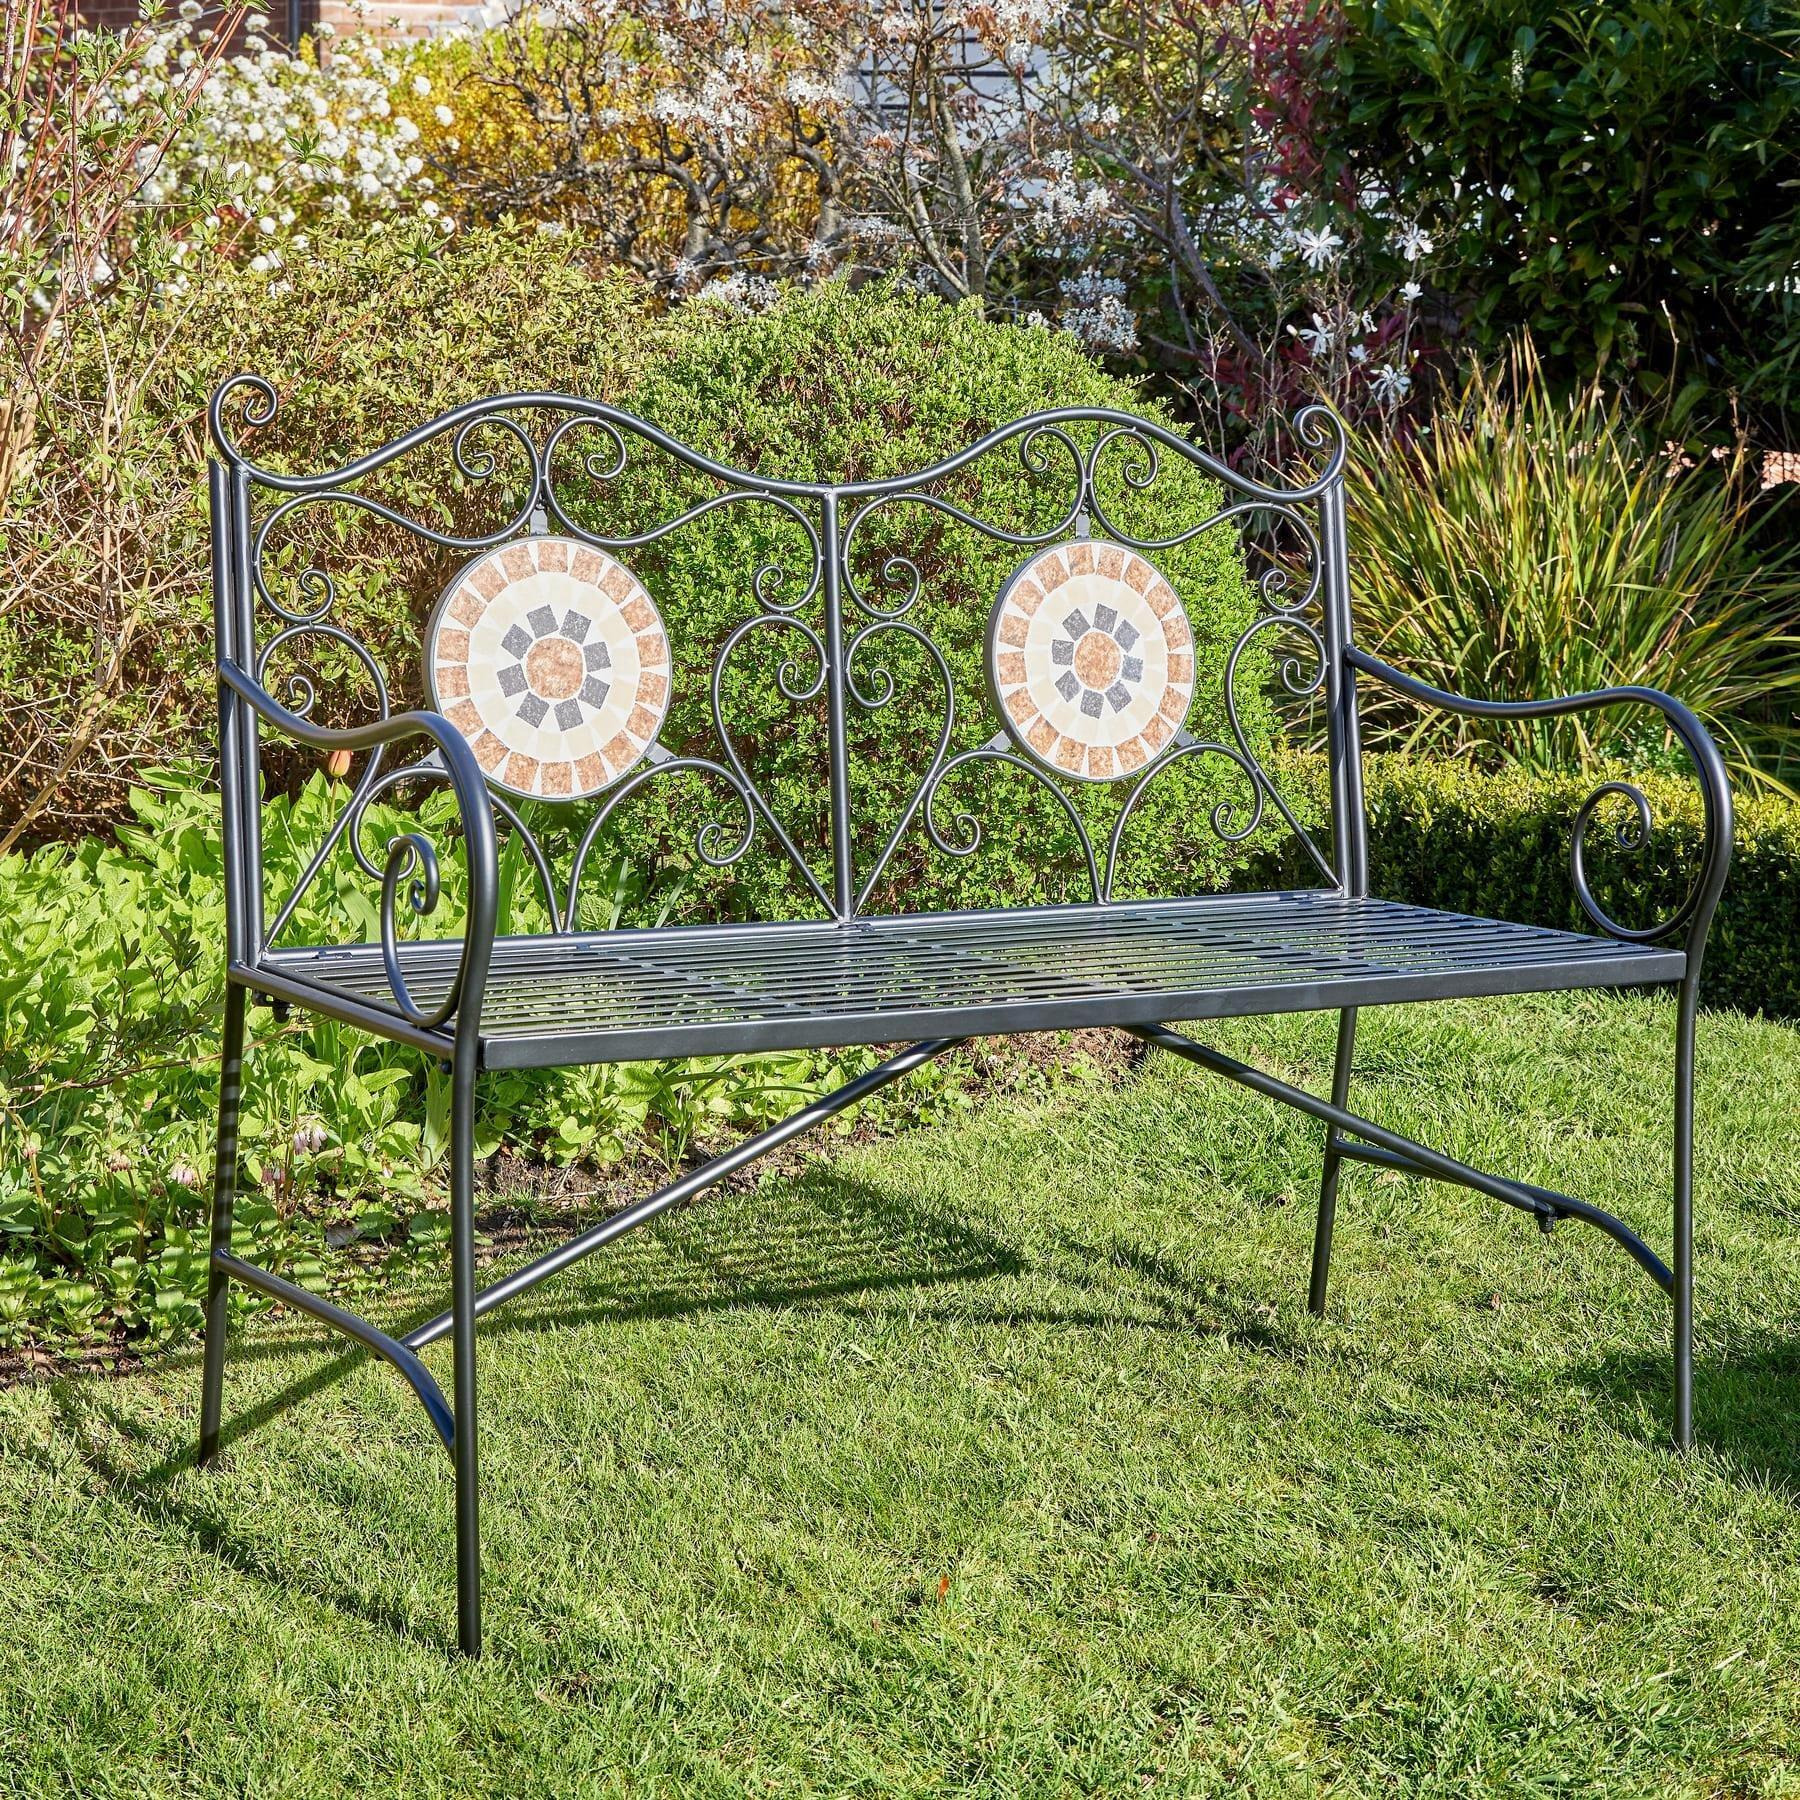 Sunflower Mosaic Design Outdoor Garden Bench - image 1